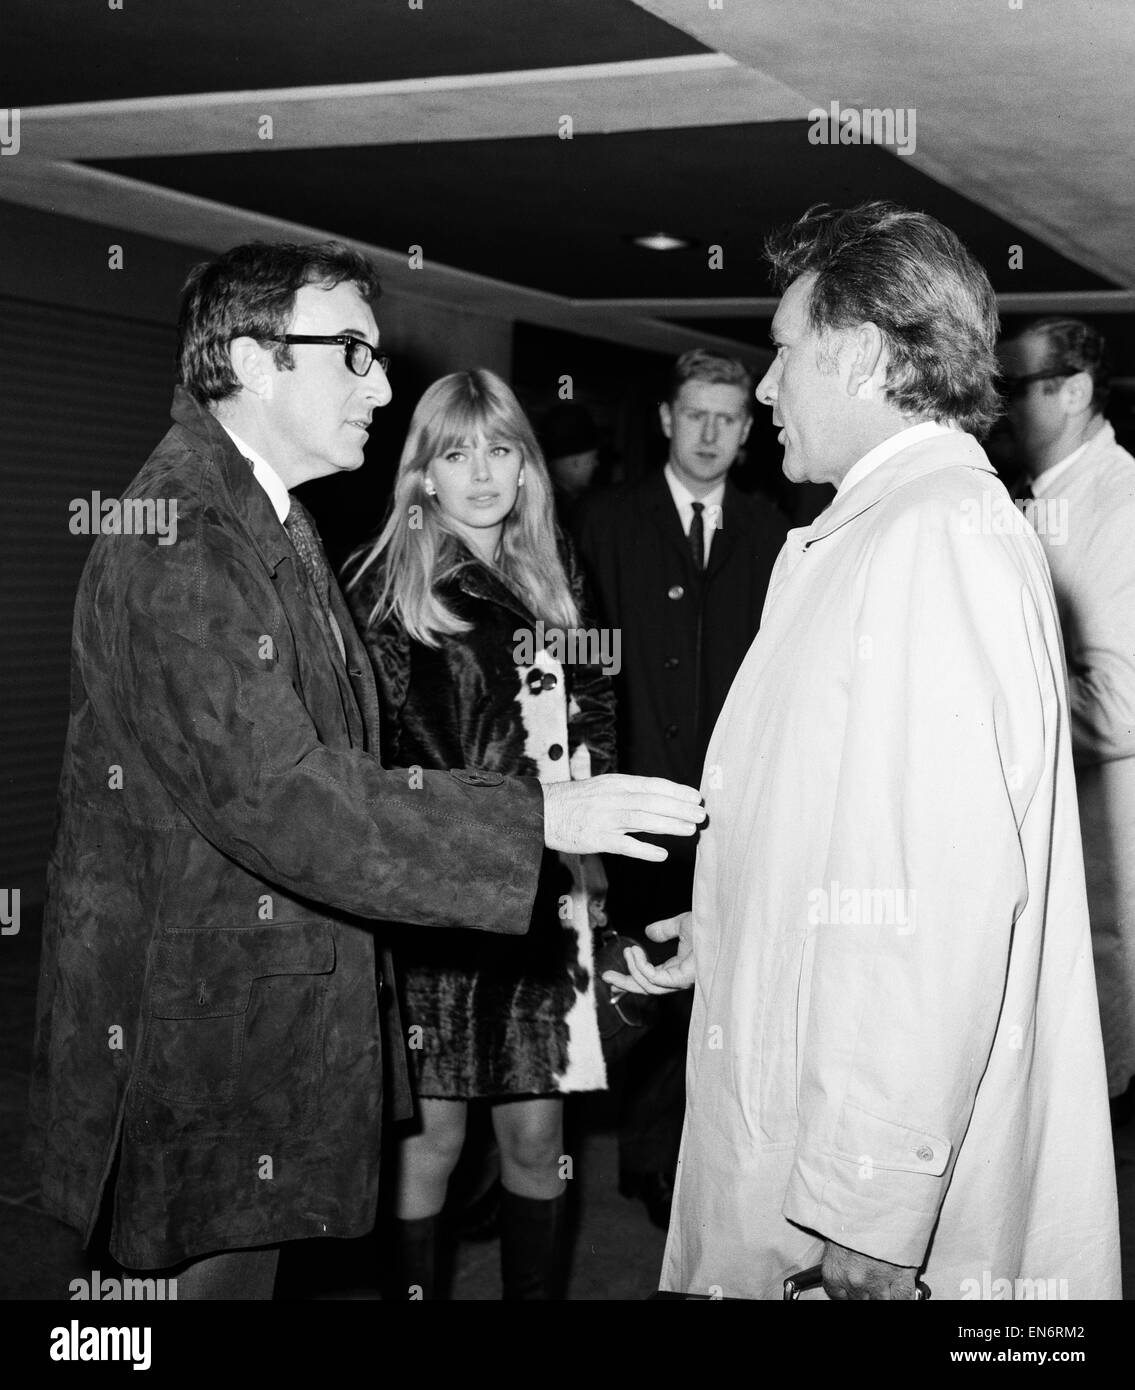 Elizabeth Taylor, Peter Sellers, Britt Ekland et Richard Burton arrivent à l'aéroport de Londres pour enregistrer une émission de télévision avec Harry Secombe dans Aberfam l'aide de la catastrophe minière. 19 novembre 1966. Banque D'Images